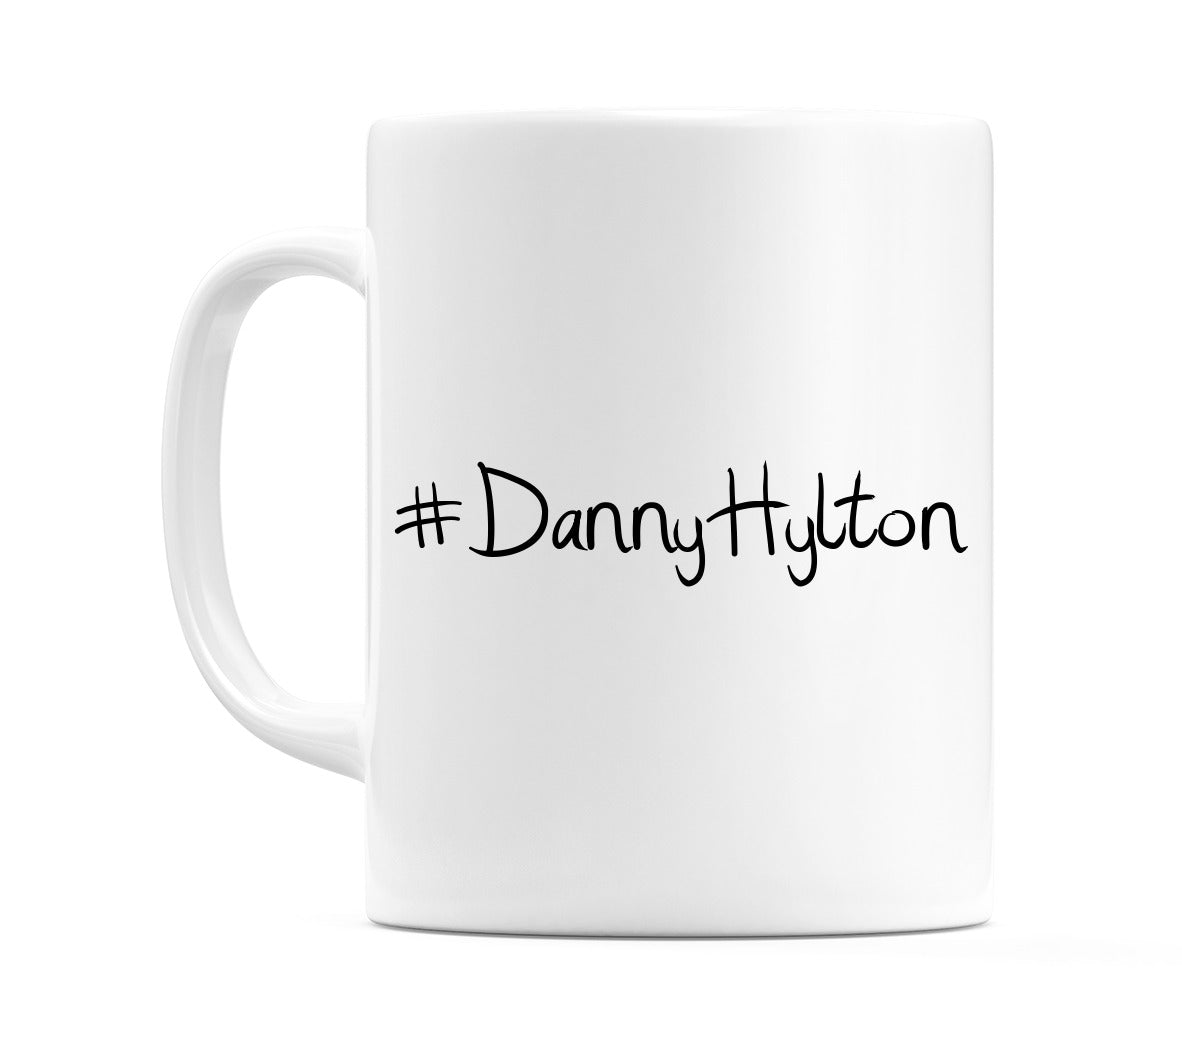 #DannyHylton Mug